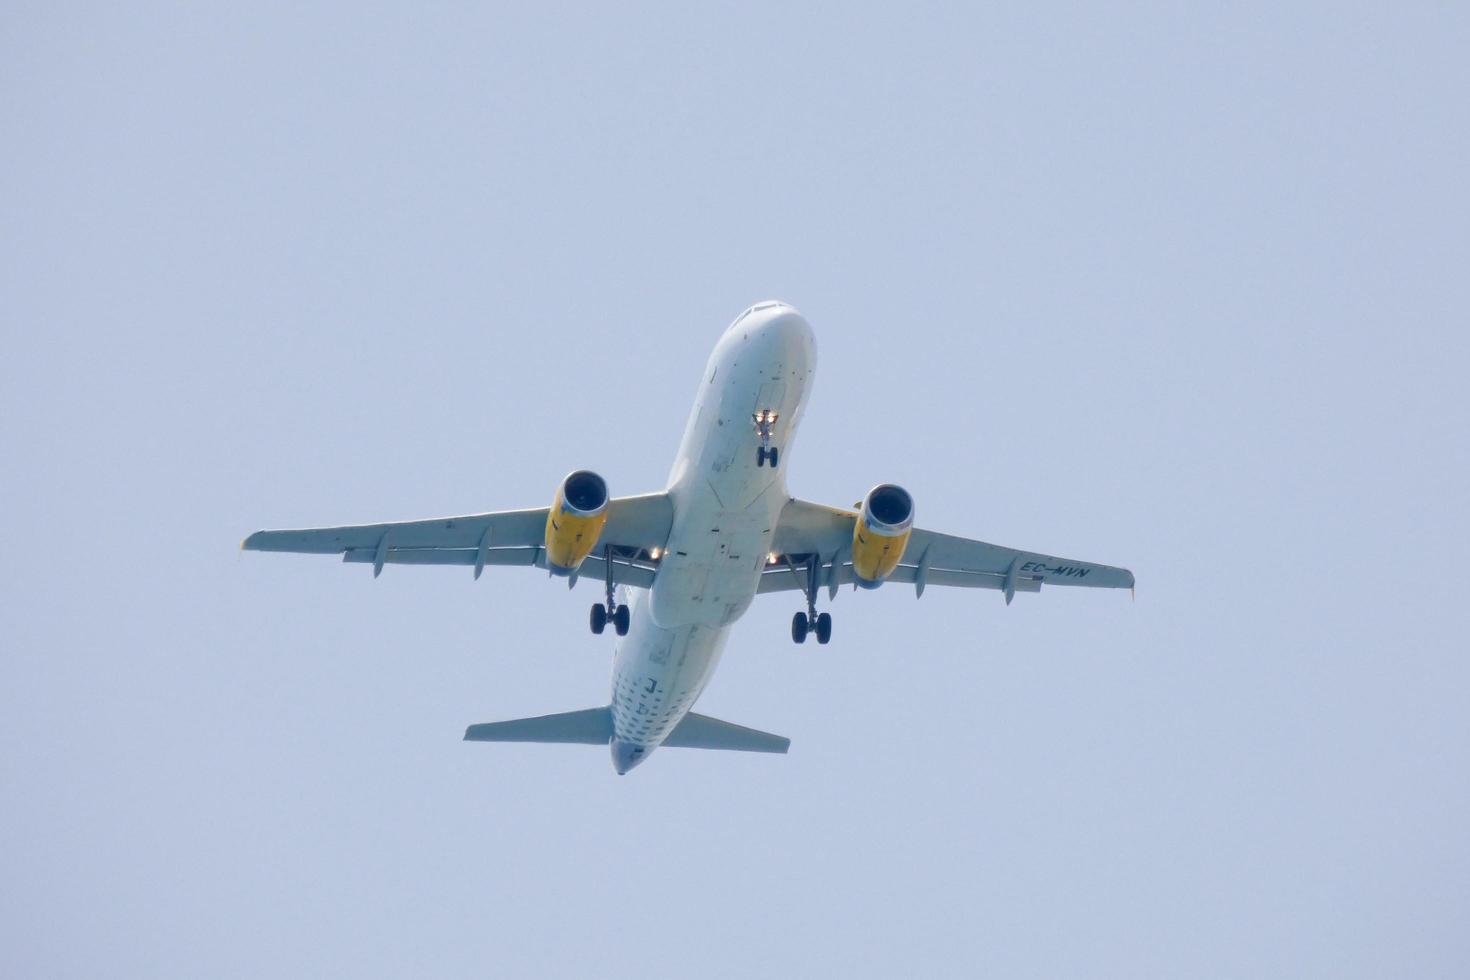 avions commerciaux volant sous un ciel bleu et arrivant à l'aéroport photo